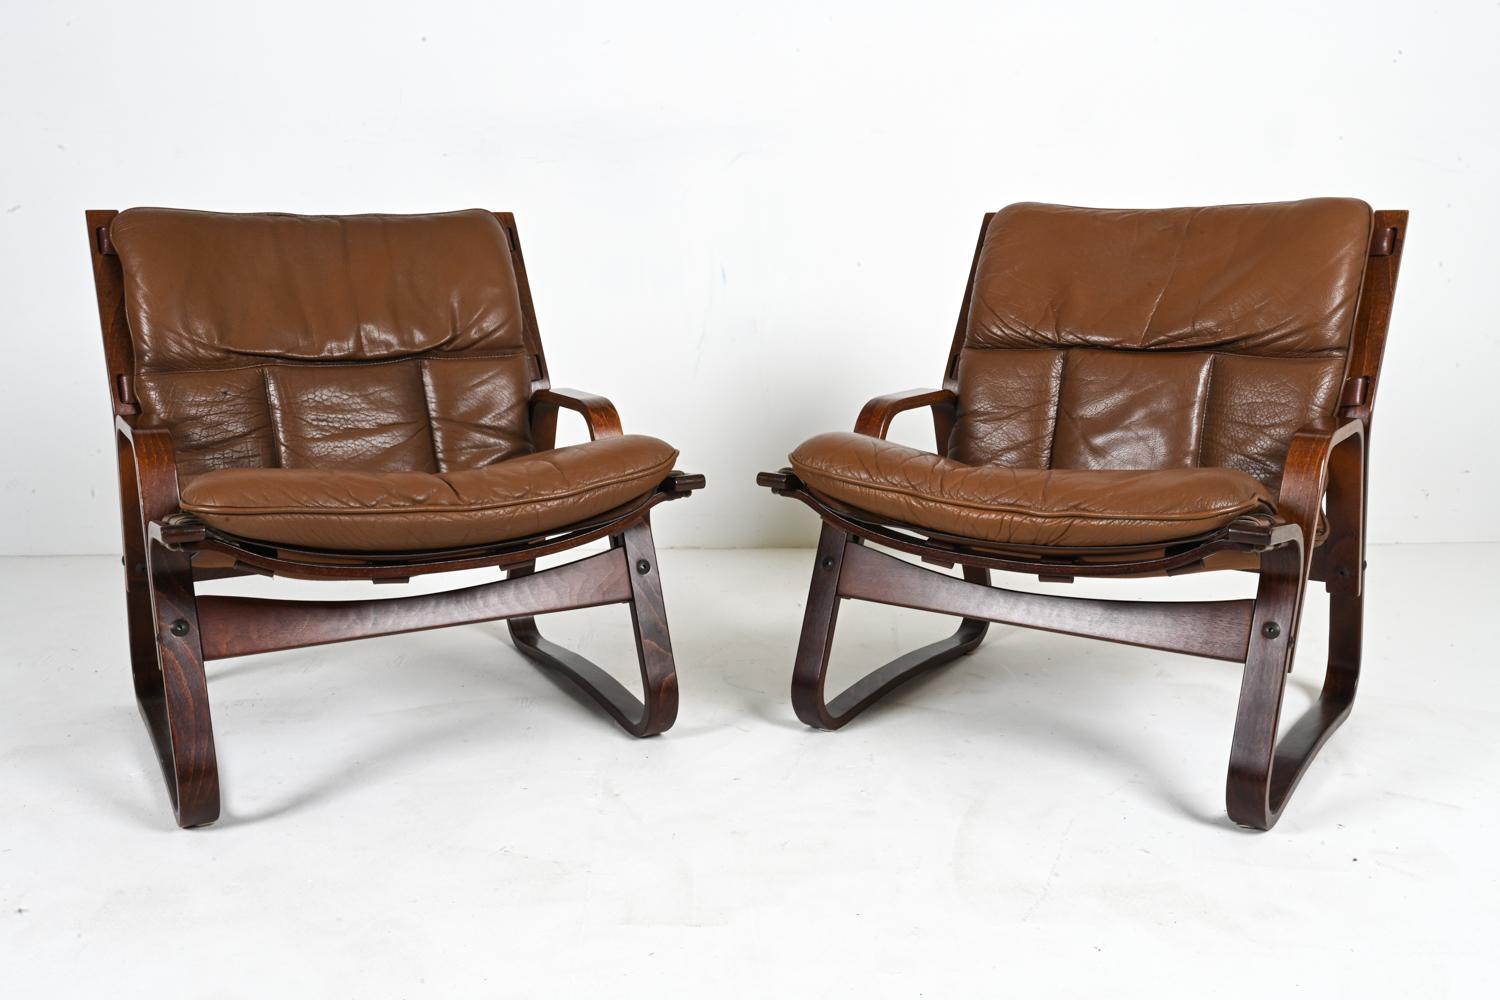 Erfüllen Sie sich Ihre Bungalow-Träume aus den 1970er Jahren mit diesem seltenen Paar norwegischer Modern Lounge Chairs, entworfen von Giske Carlsen für Kleppe Møbelfabrik. Die robusten Rahmen aus gebogenem Buchenholz sind in einer satten